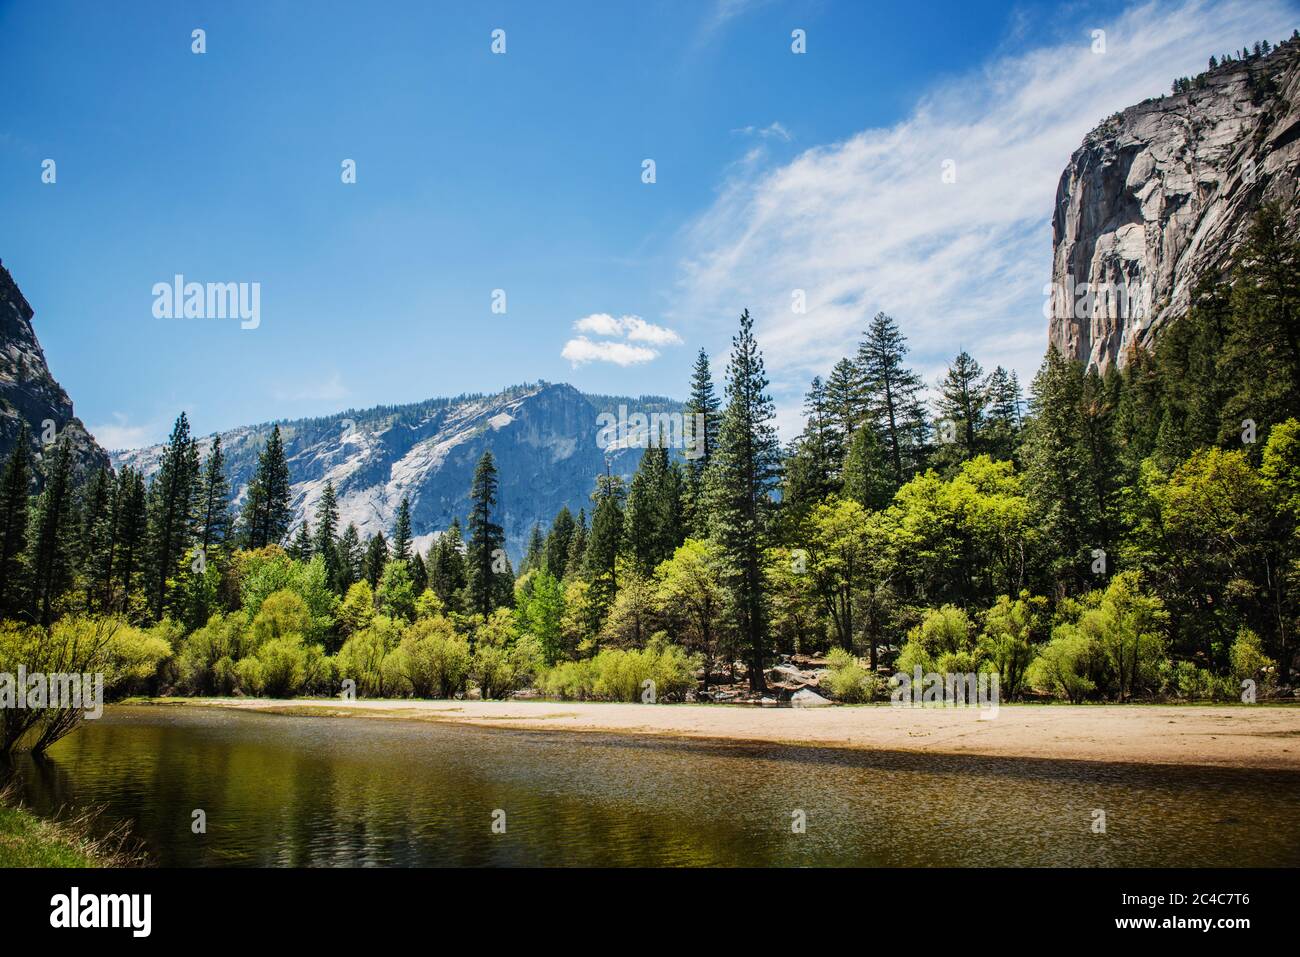 montagne surplombant le lac miroir dans le parc national de Yosemite, comté de Mariposa, Californie, États-Unis Banque D'Images